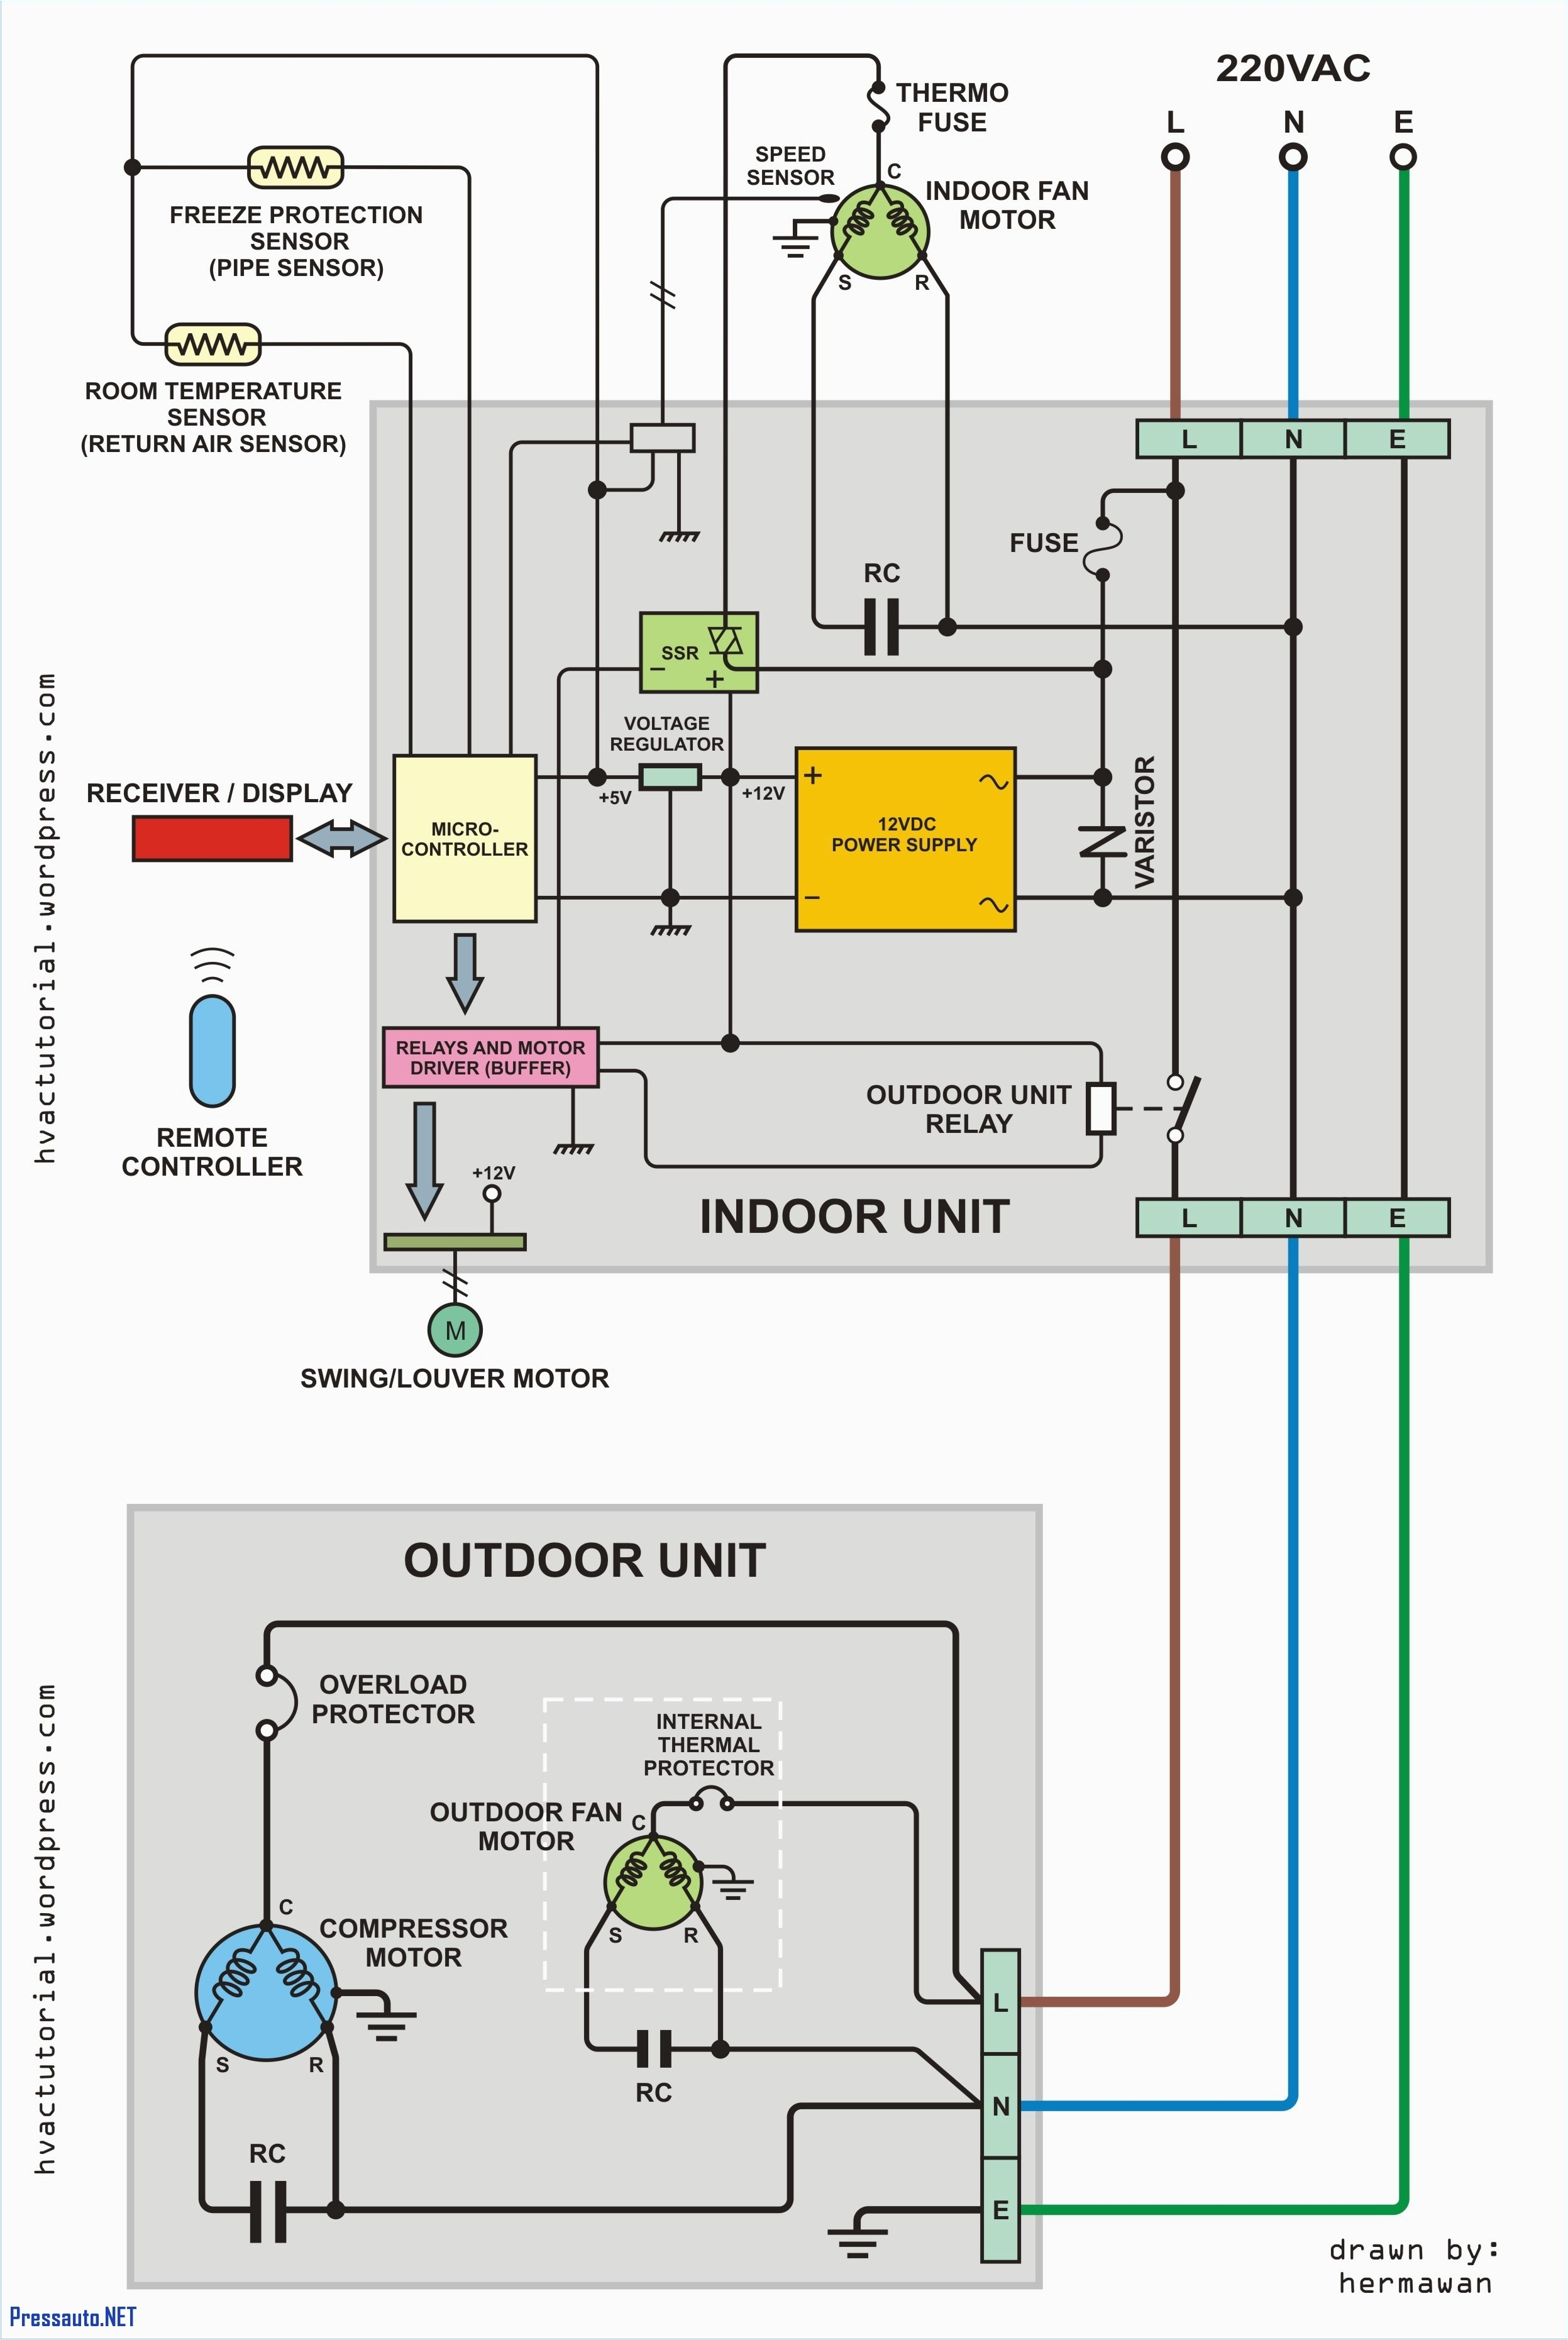 Rheem Heat Pump Wiring Diagram York Furnace Wiring Stat Wiring Diagrams Schema